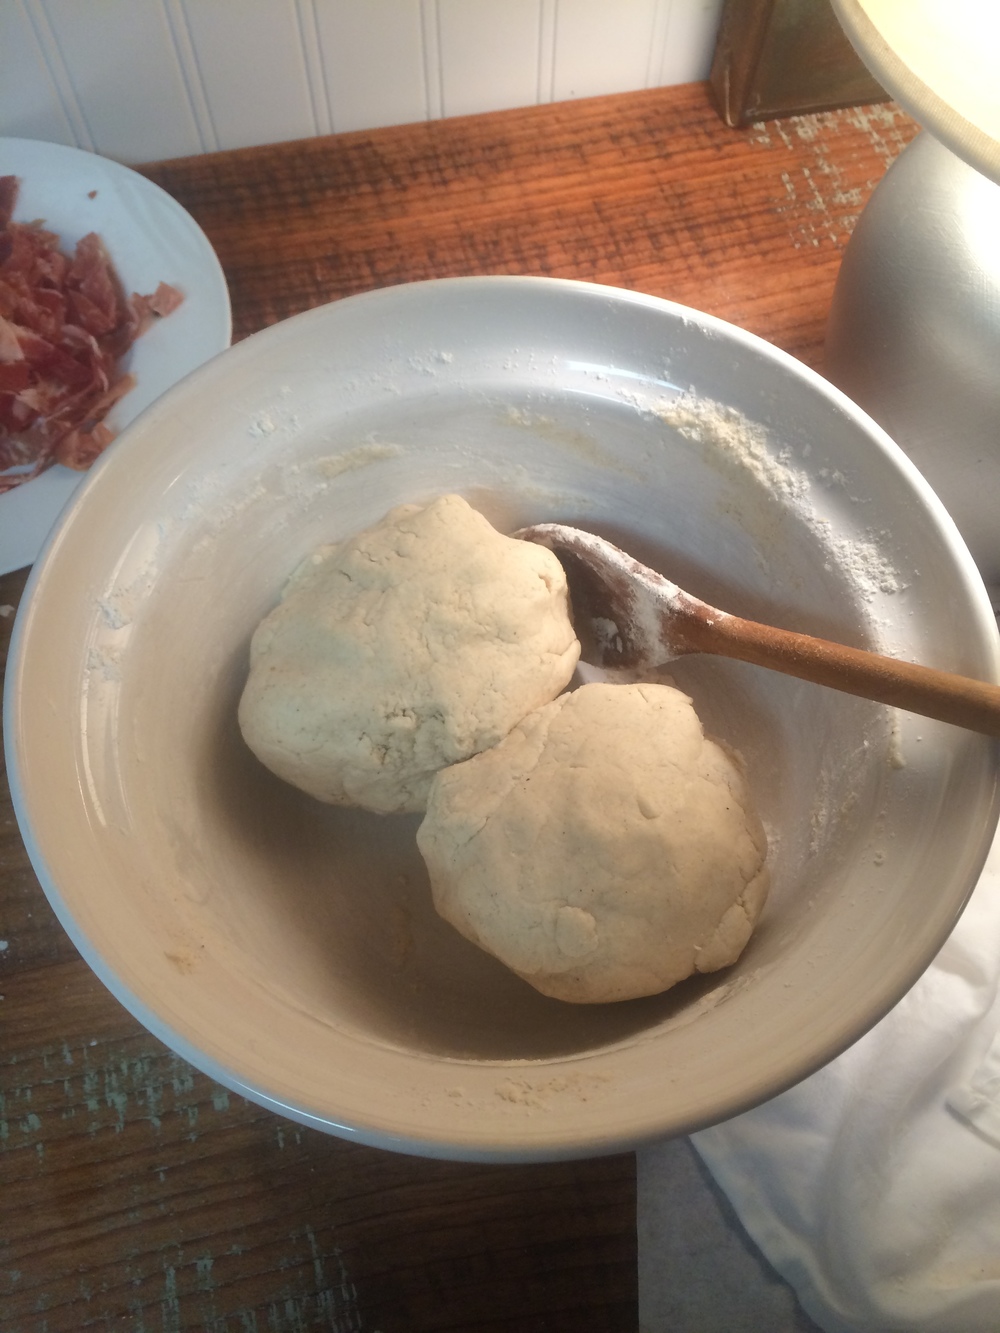 divide dough into 2 balls